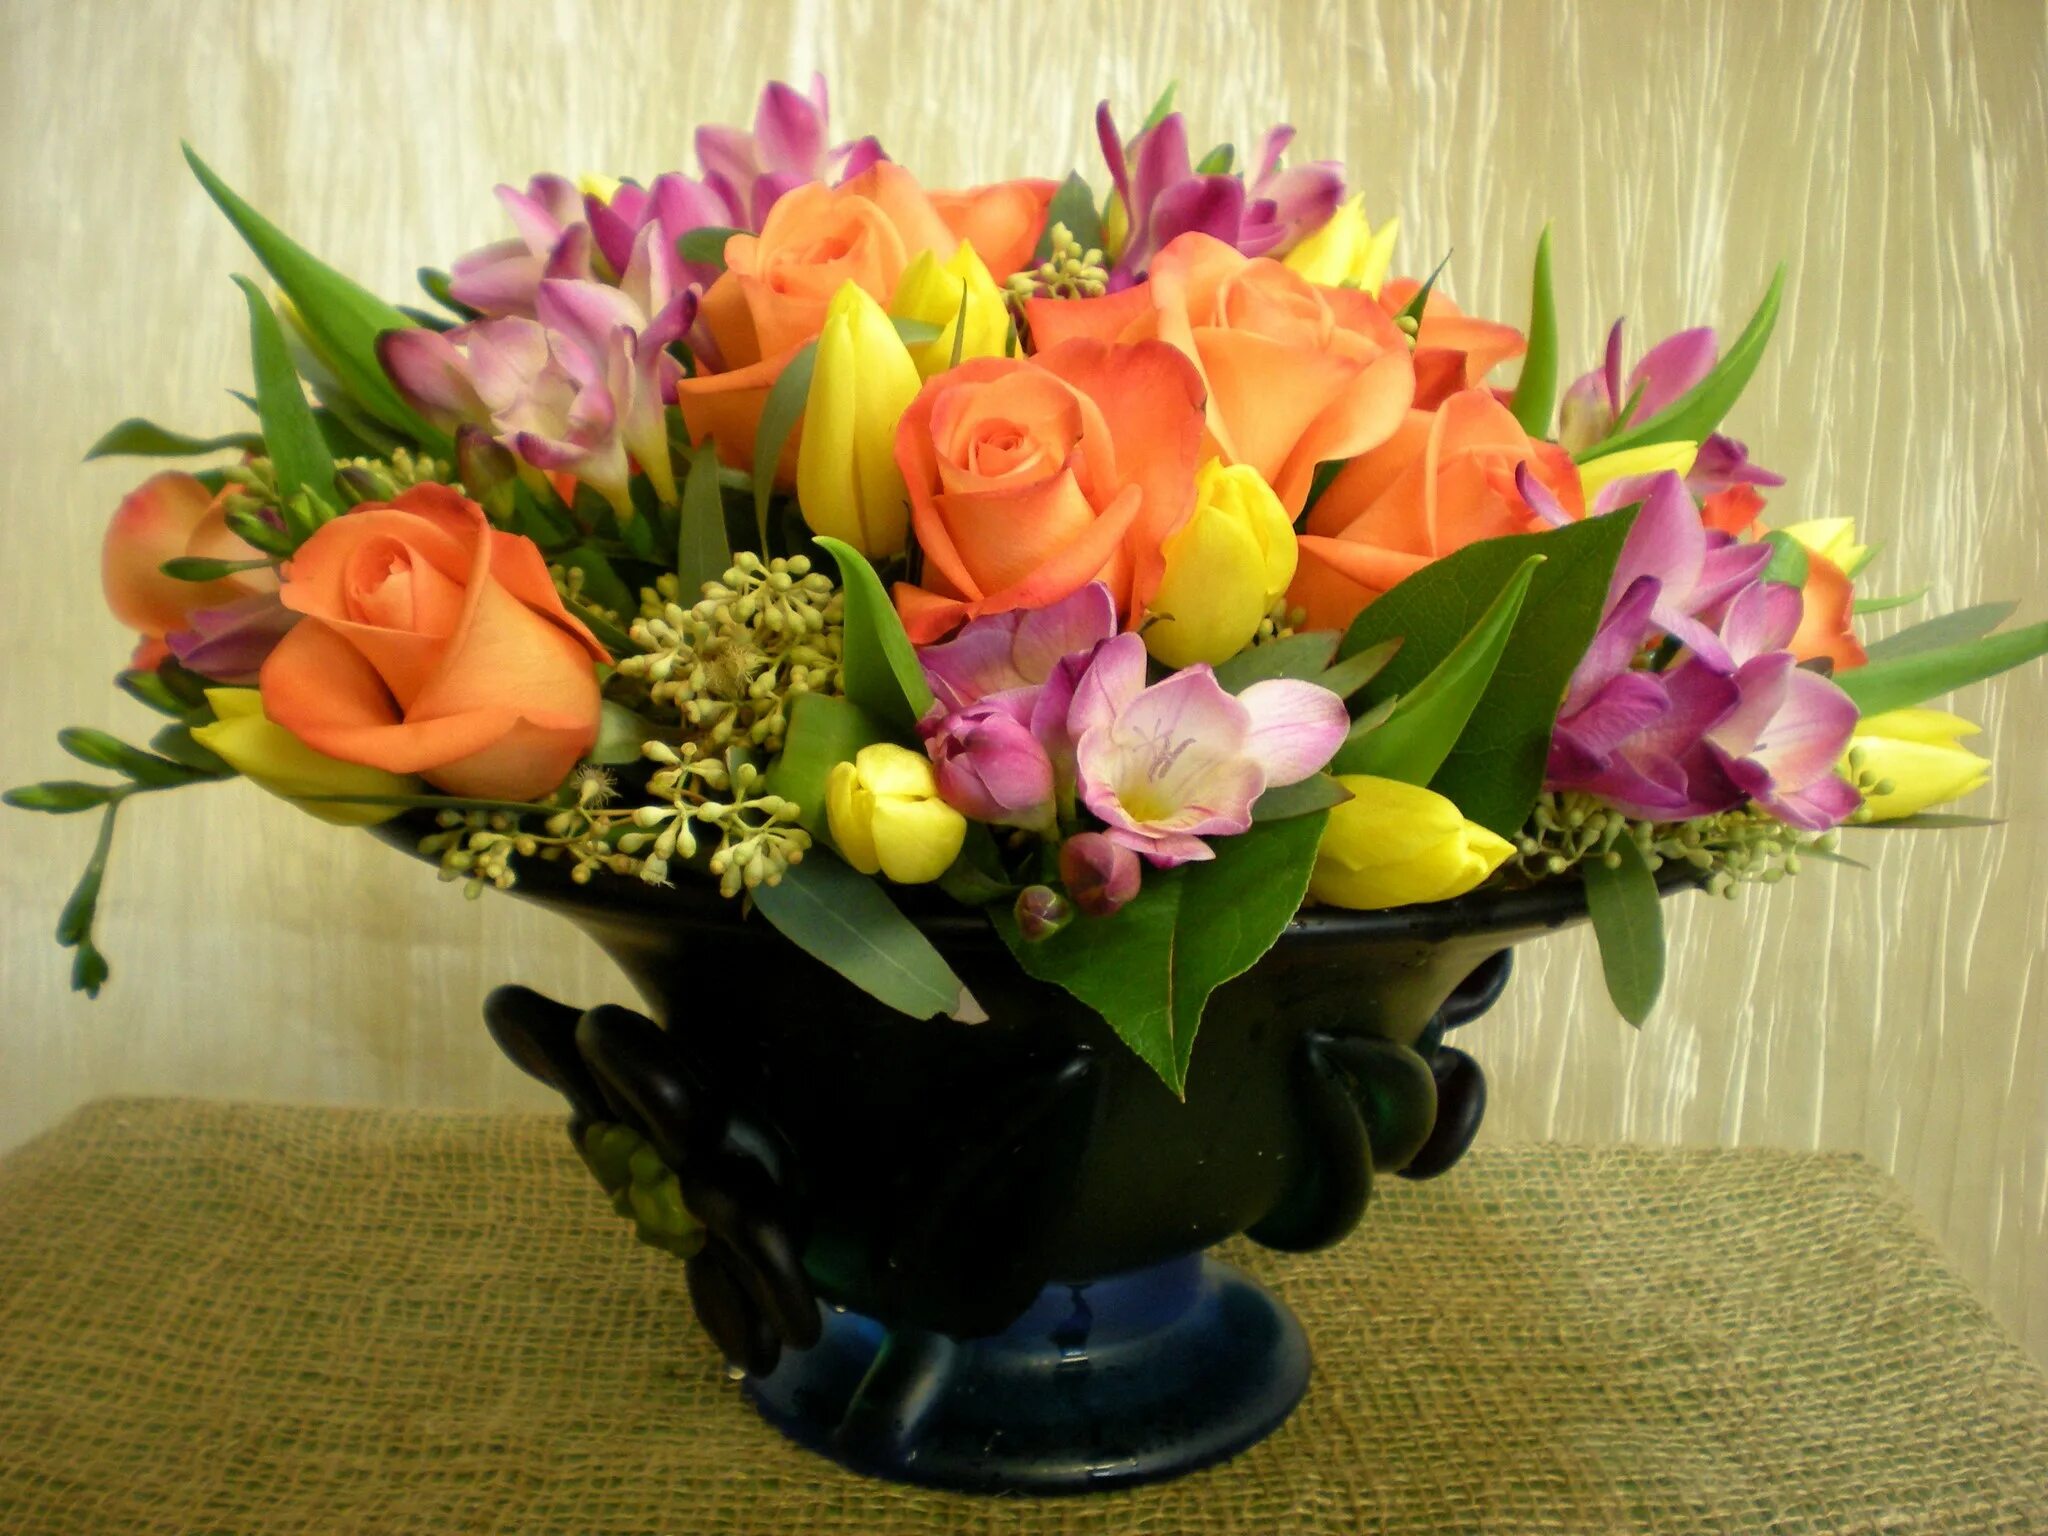 Фрезия и тюльпаны. Фрезии тюльпаны и розы в букете. Большой весенний букет